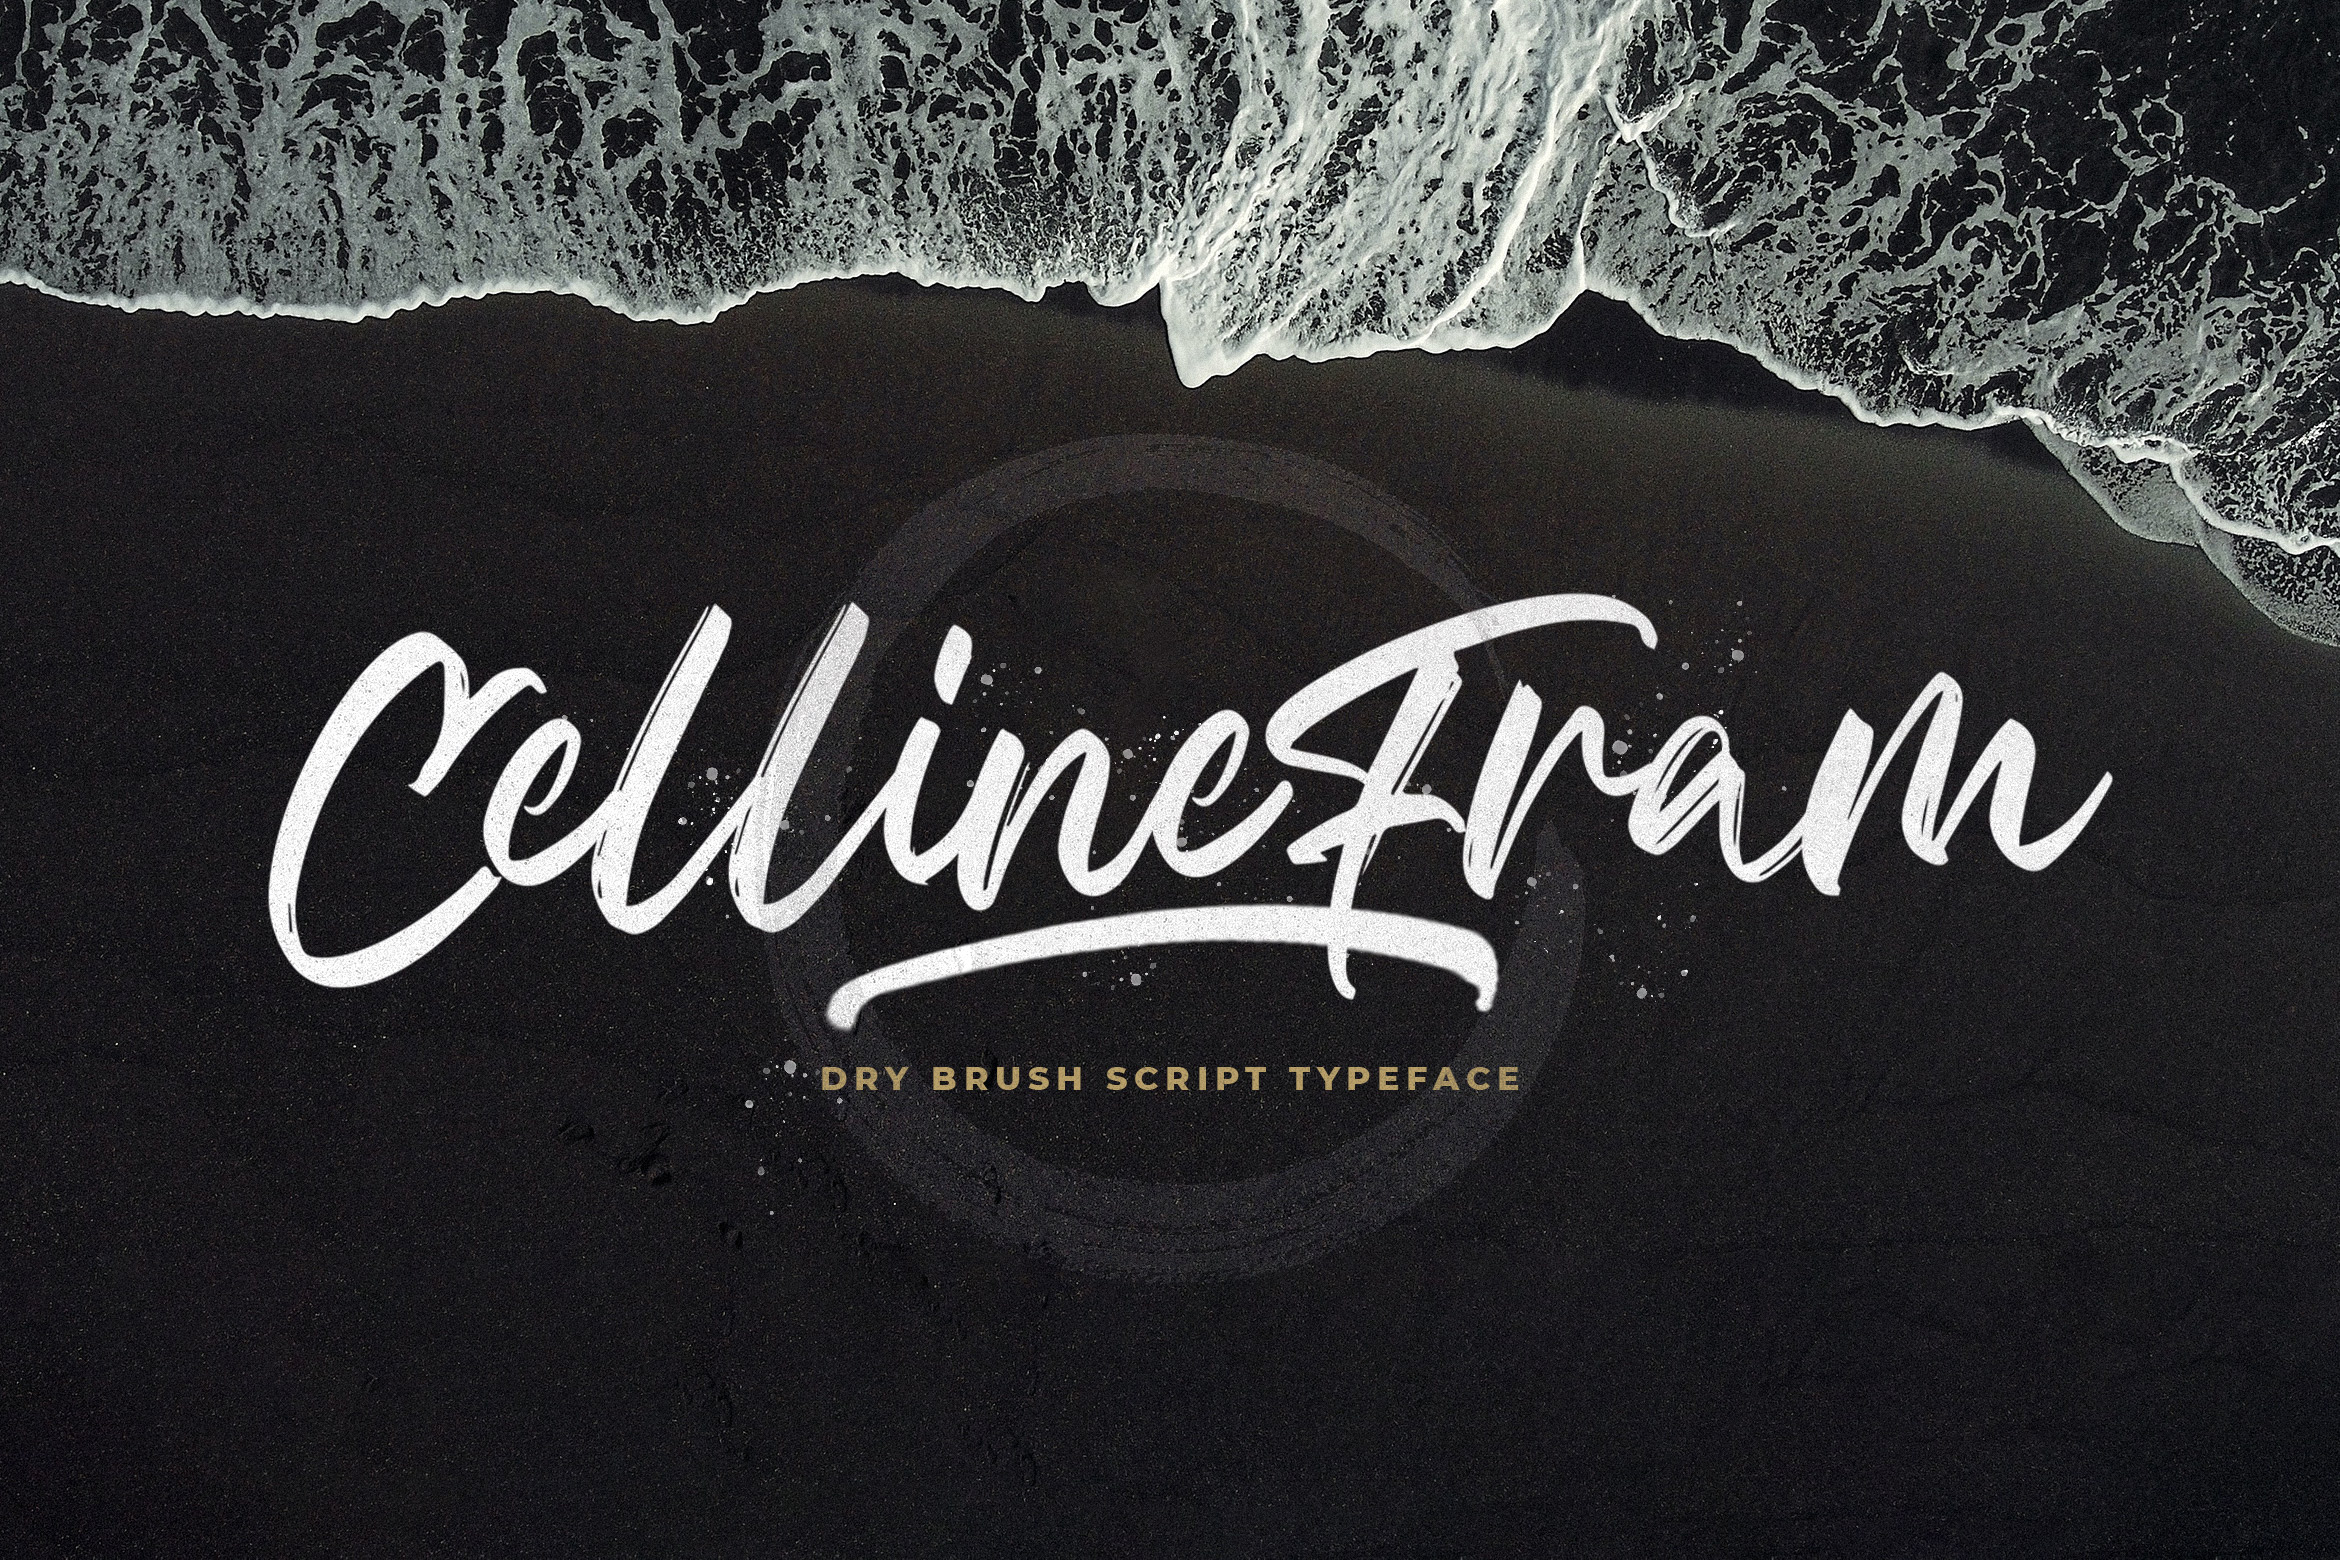 Celline Fram